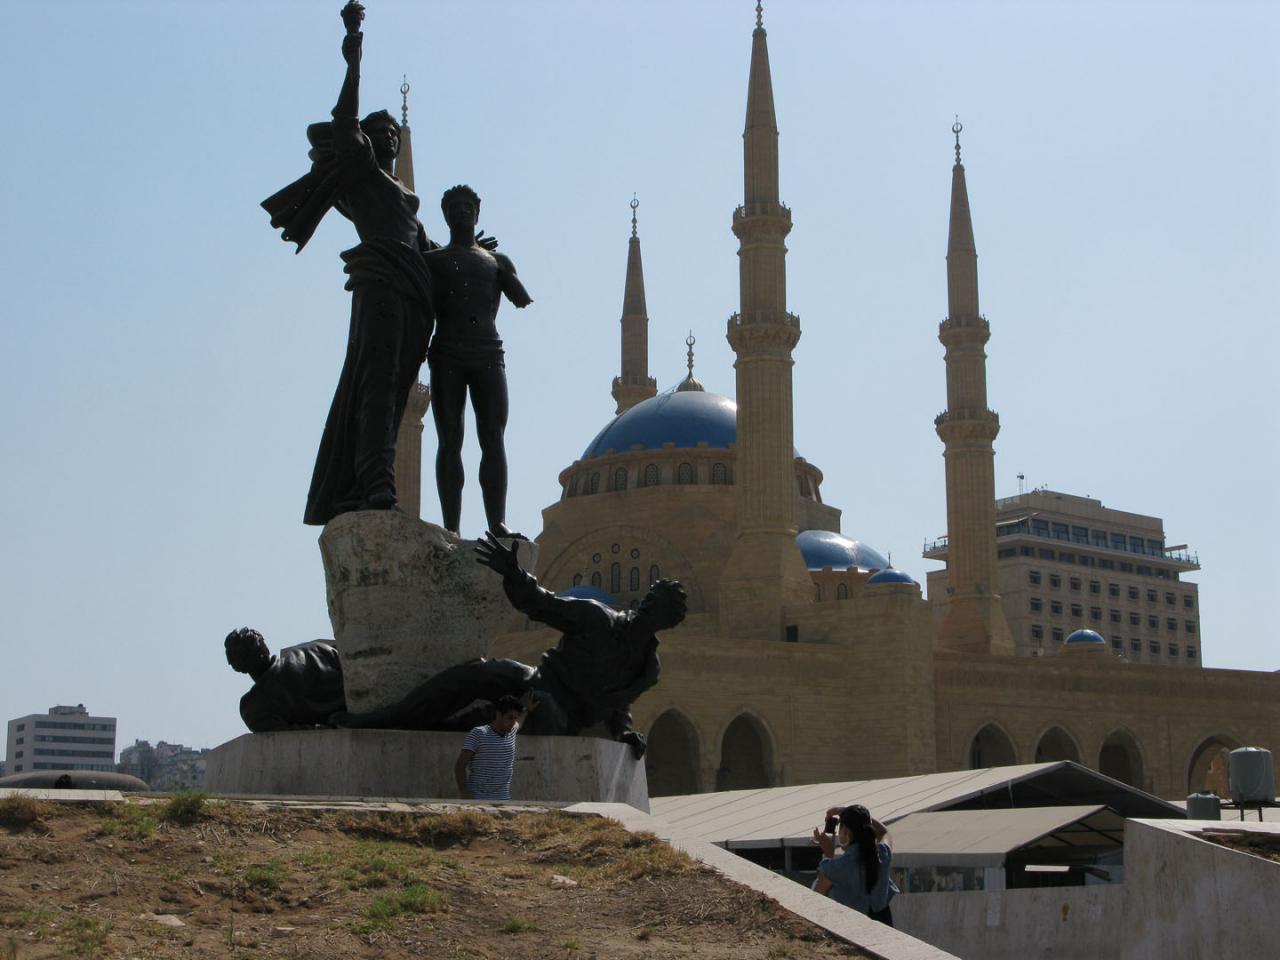 بهترین جاهای دیدنی بیروت (پایتخت لبنان)